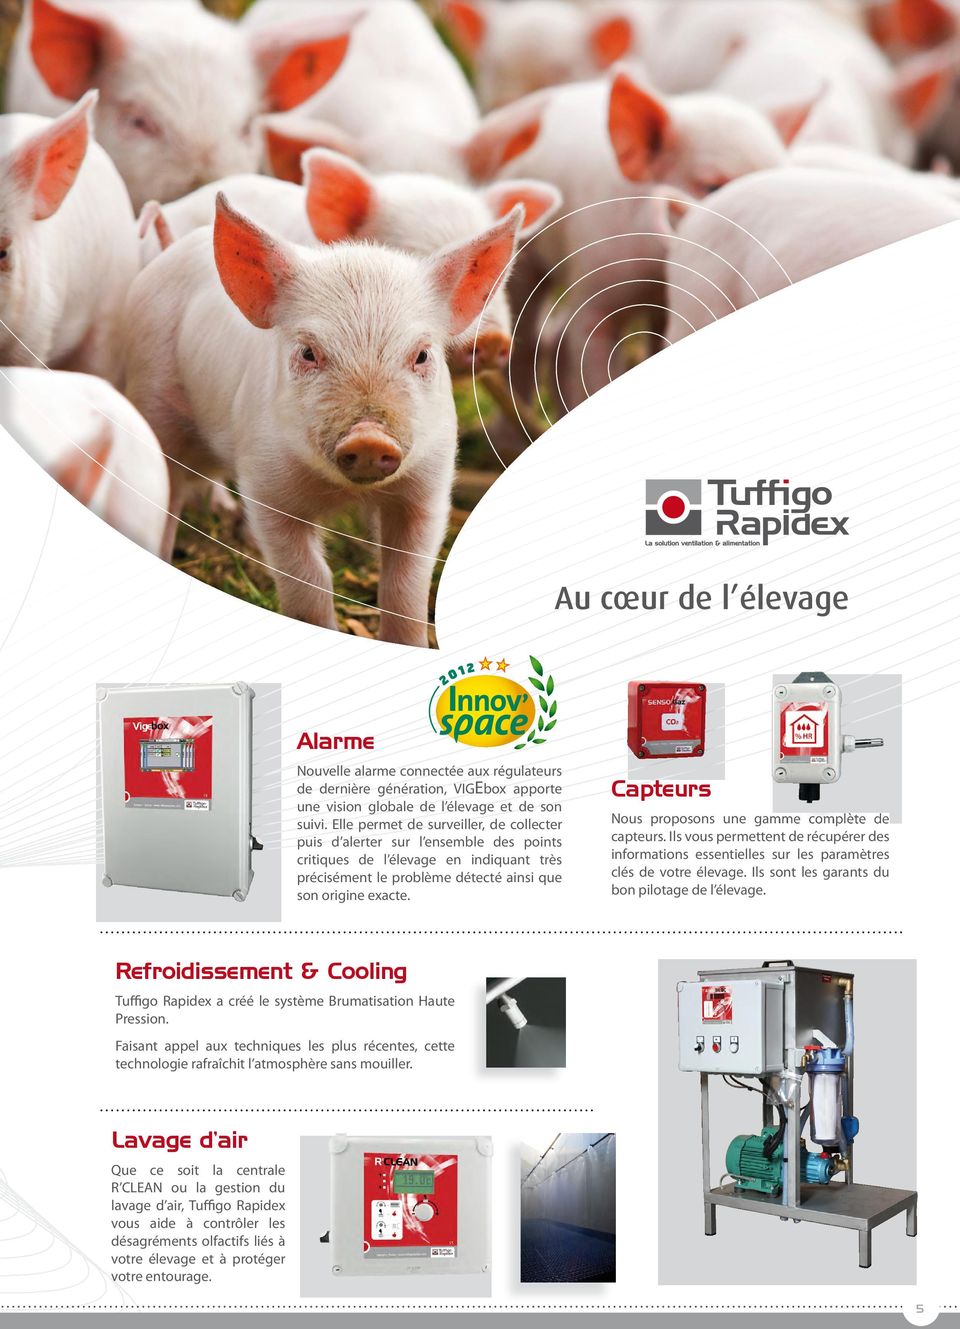 Capteurs Nous proposons une gamme complète de capteurs. Ils vous permettent de récupérer des informations essentielles sur les paramètres clés de votre élevage.